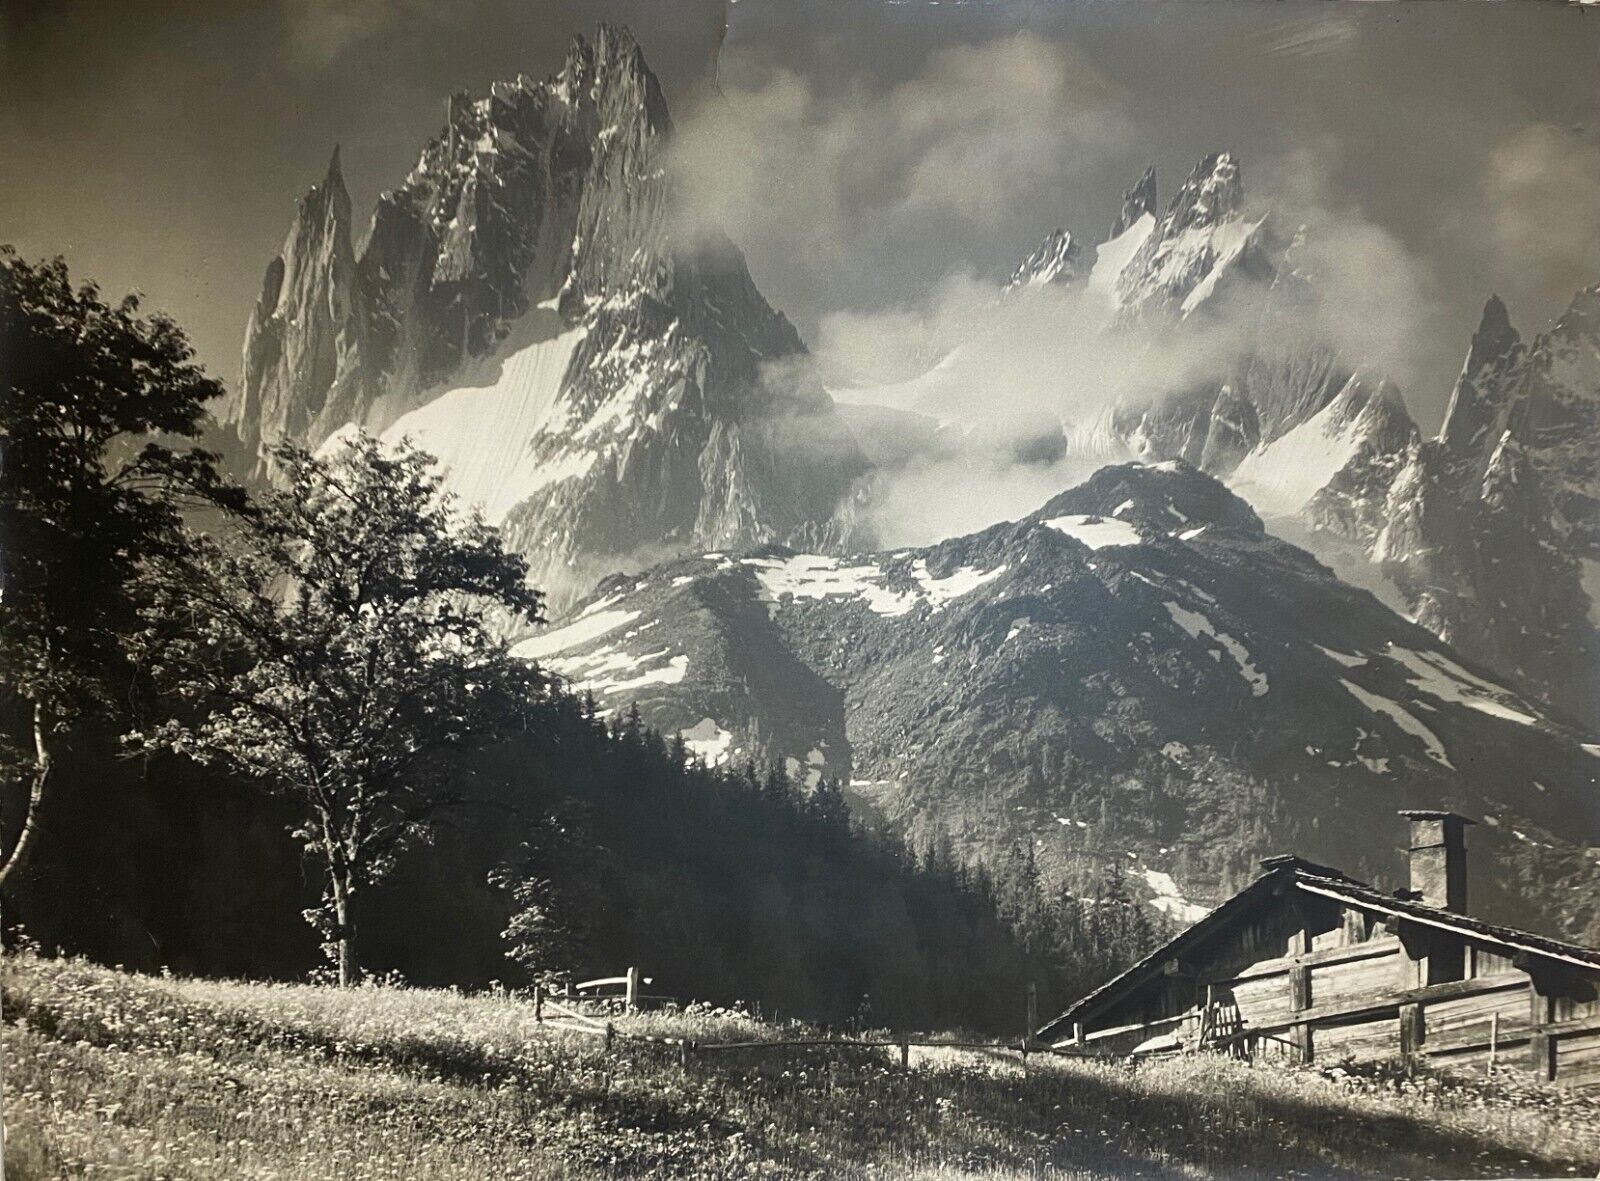 Pierre TAIRRAZ, mountain chalet Chamonix-Mont-Blanc silver print c. 1950